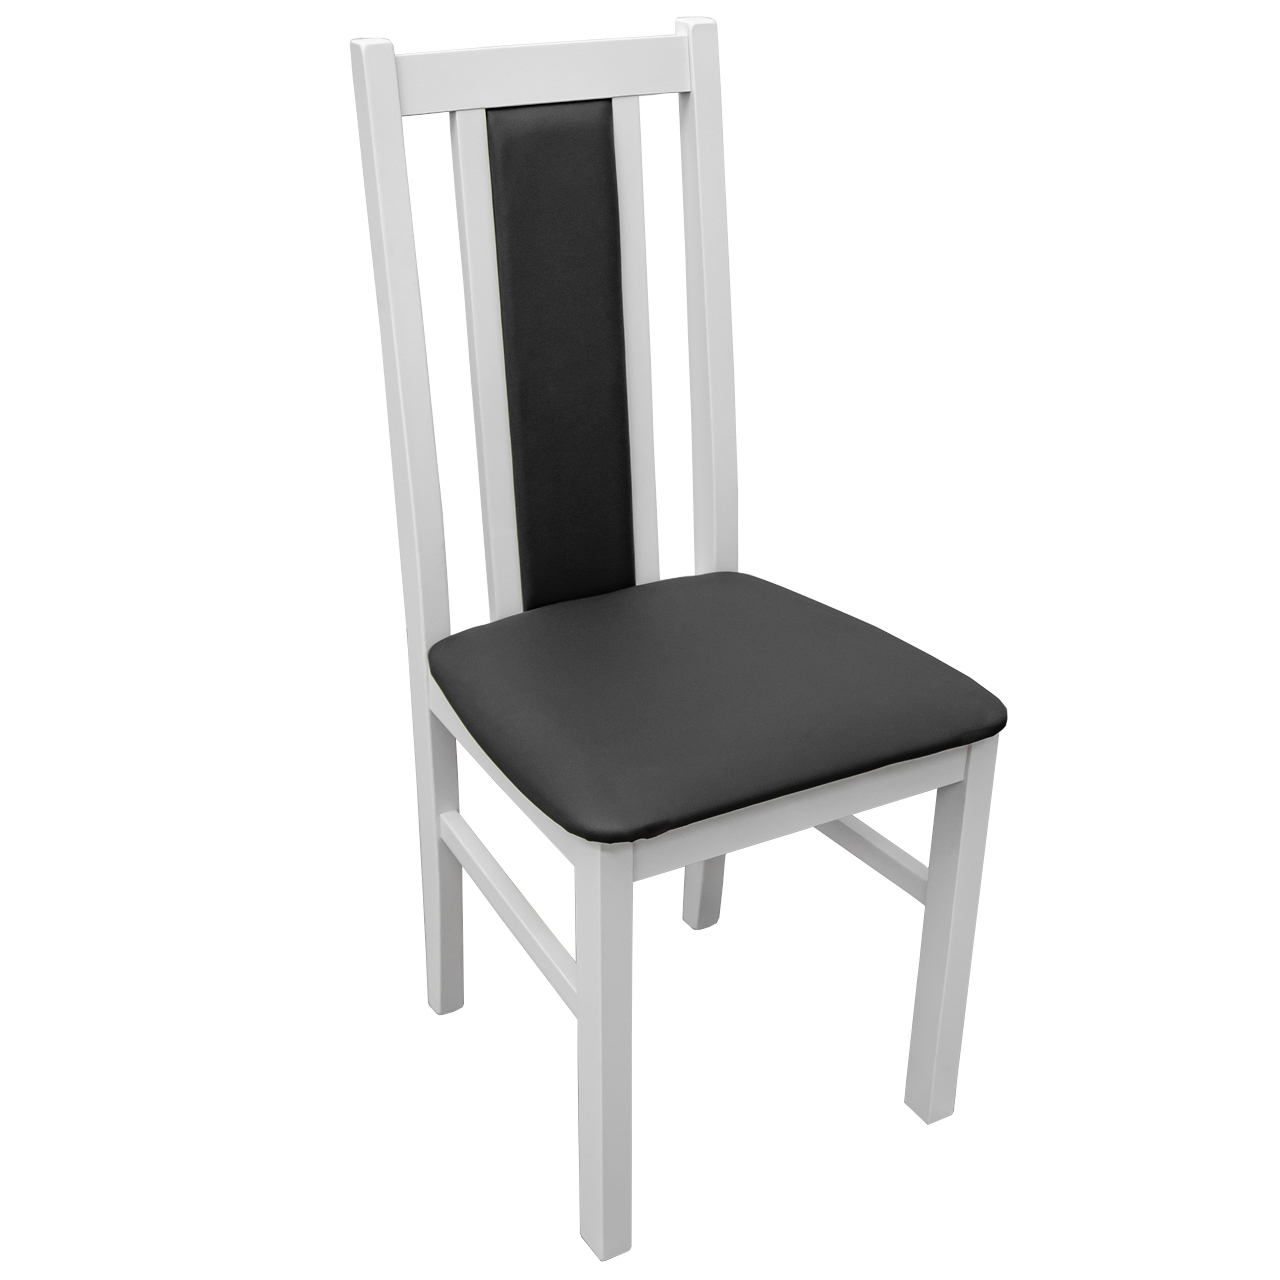 Chair BOS 14 white / 32B